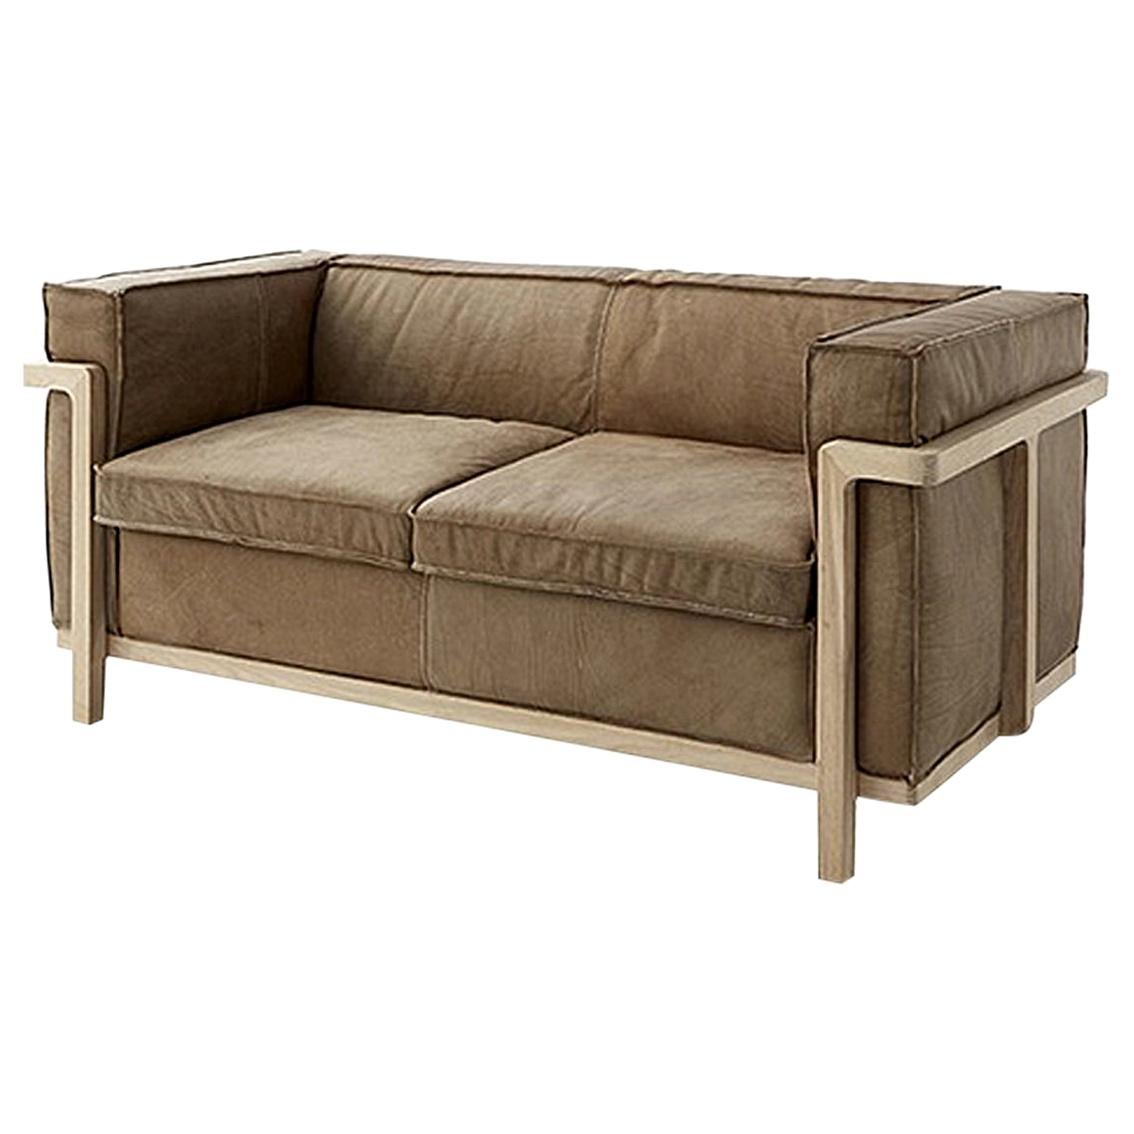 Cheyenne Sofa For Sale